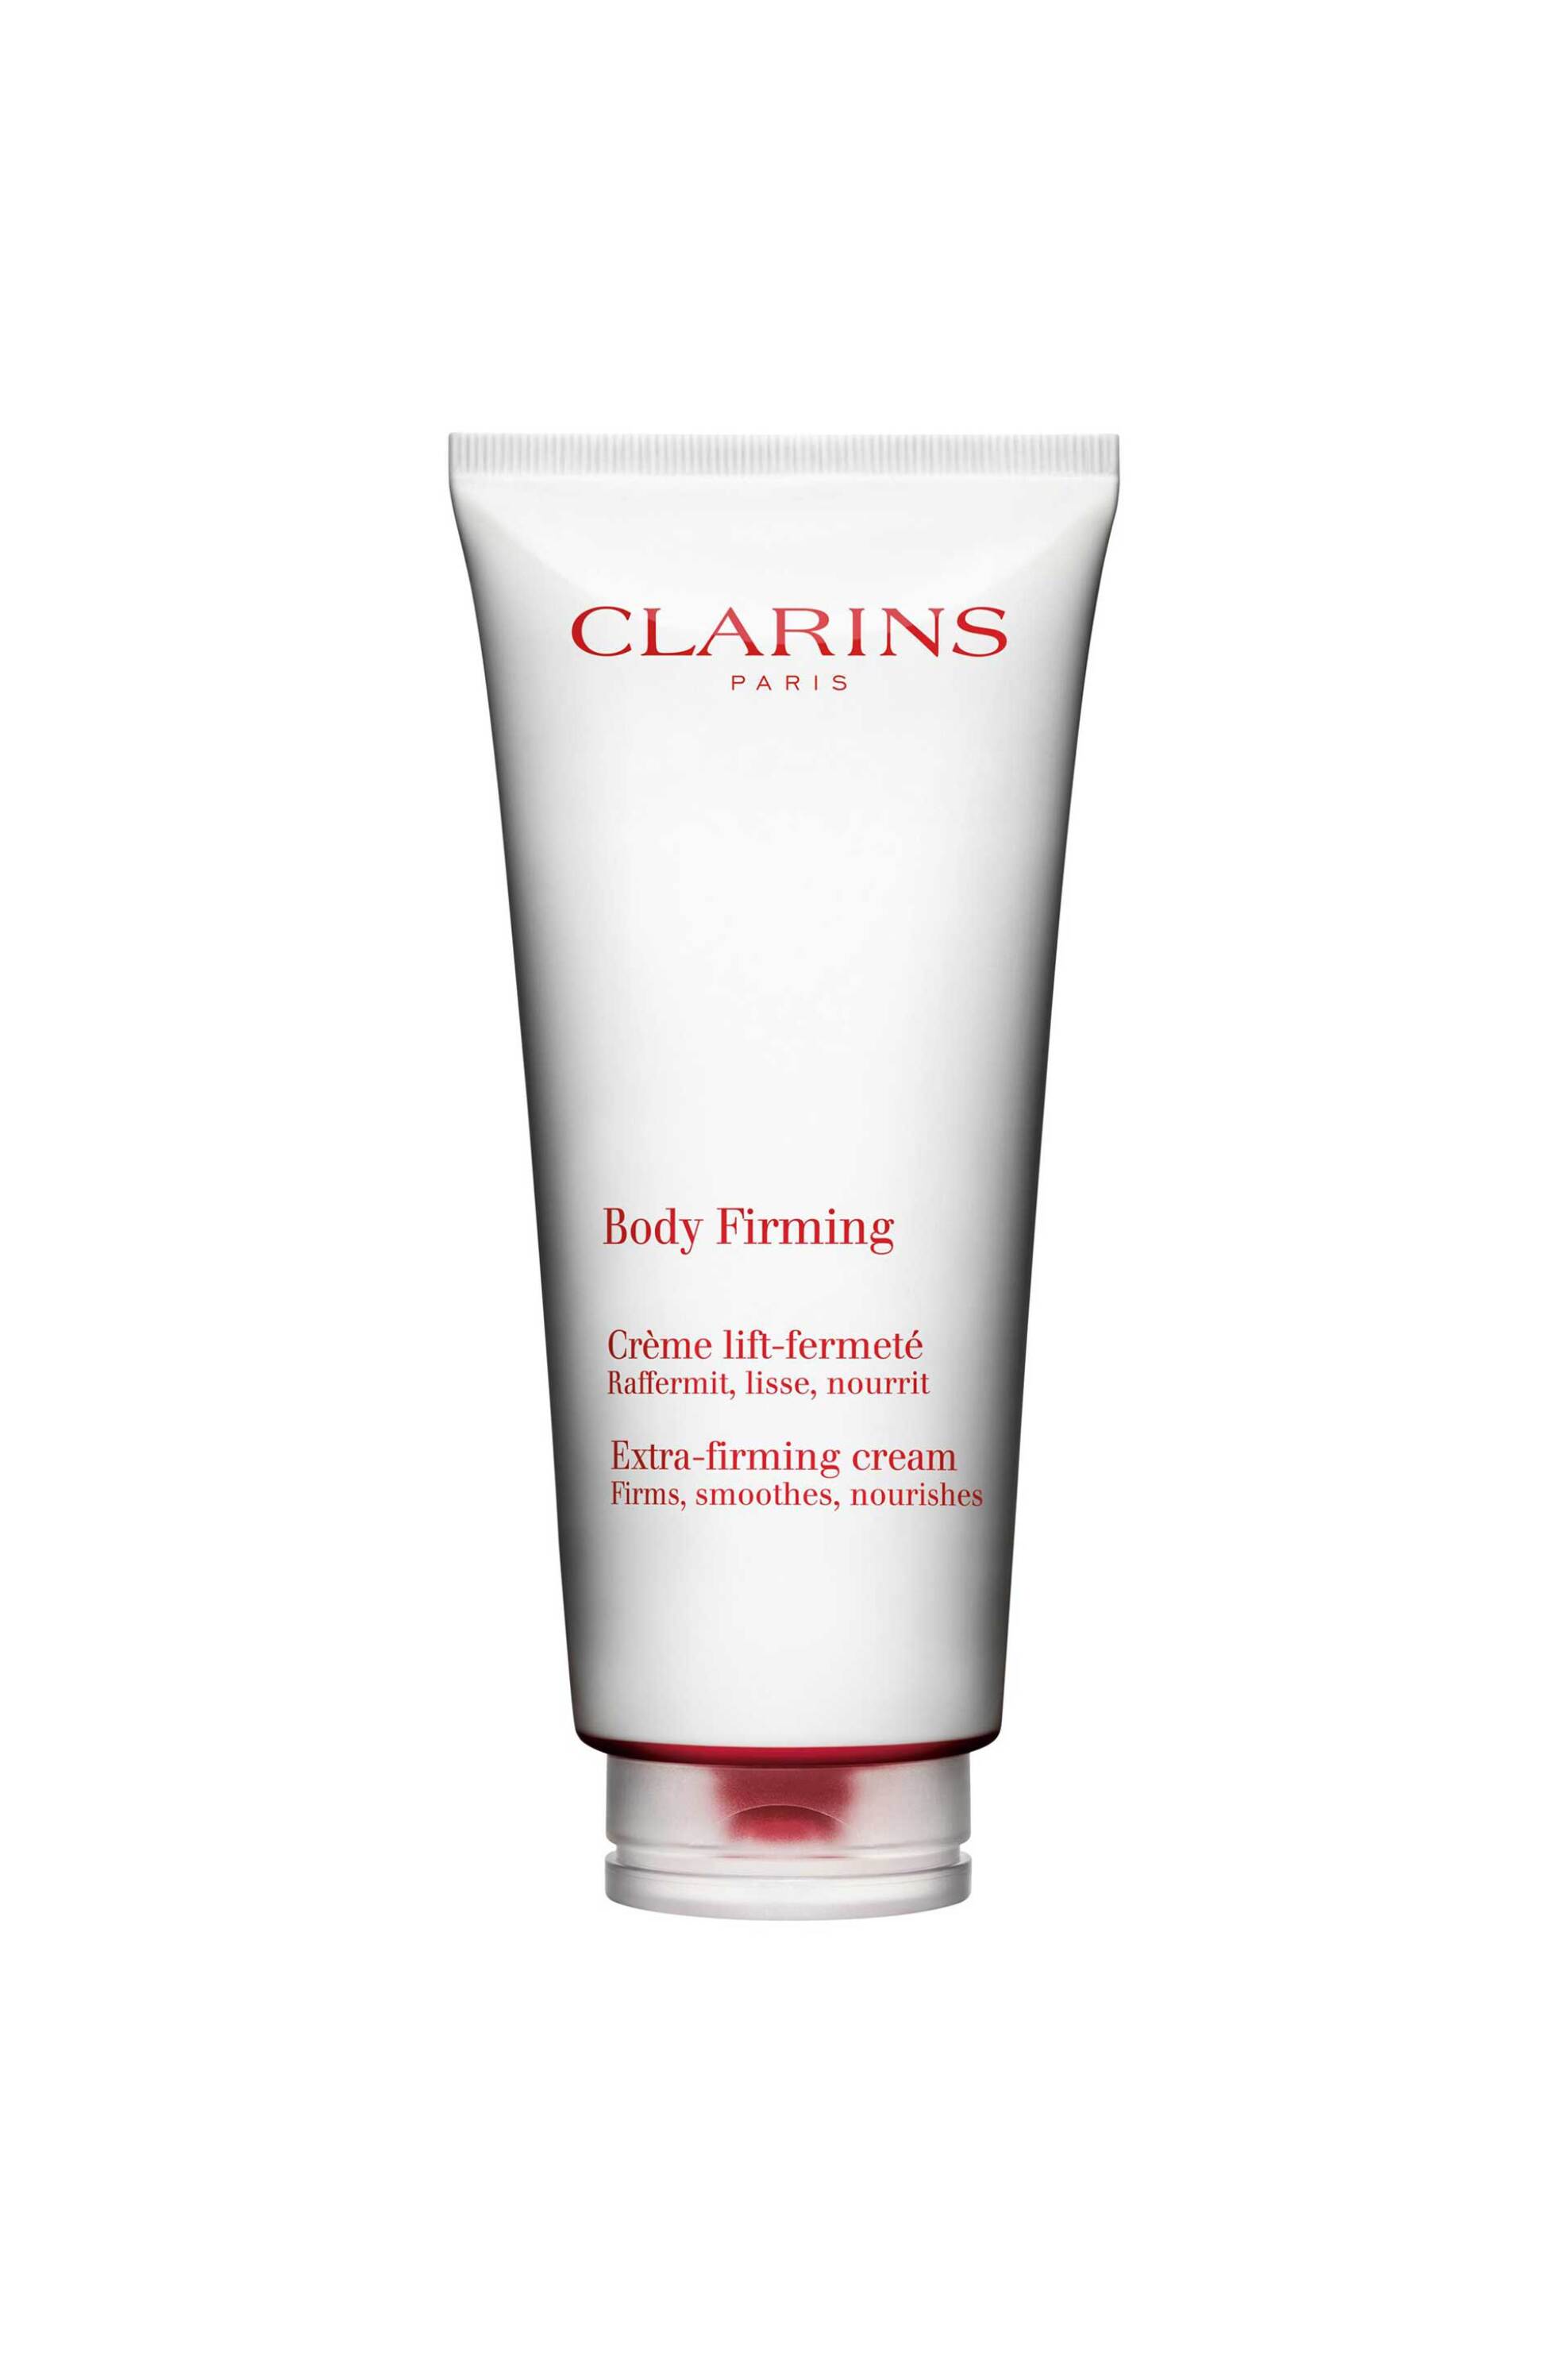 Προϊόντα Ομορφιάς > Περιποίηση Σώματος > Προϊόντα Αδυνατίσματος Clarins Body Firming Extra-firming Cream 200 ml - 80084435